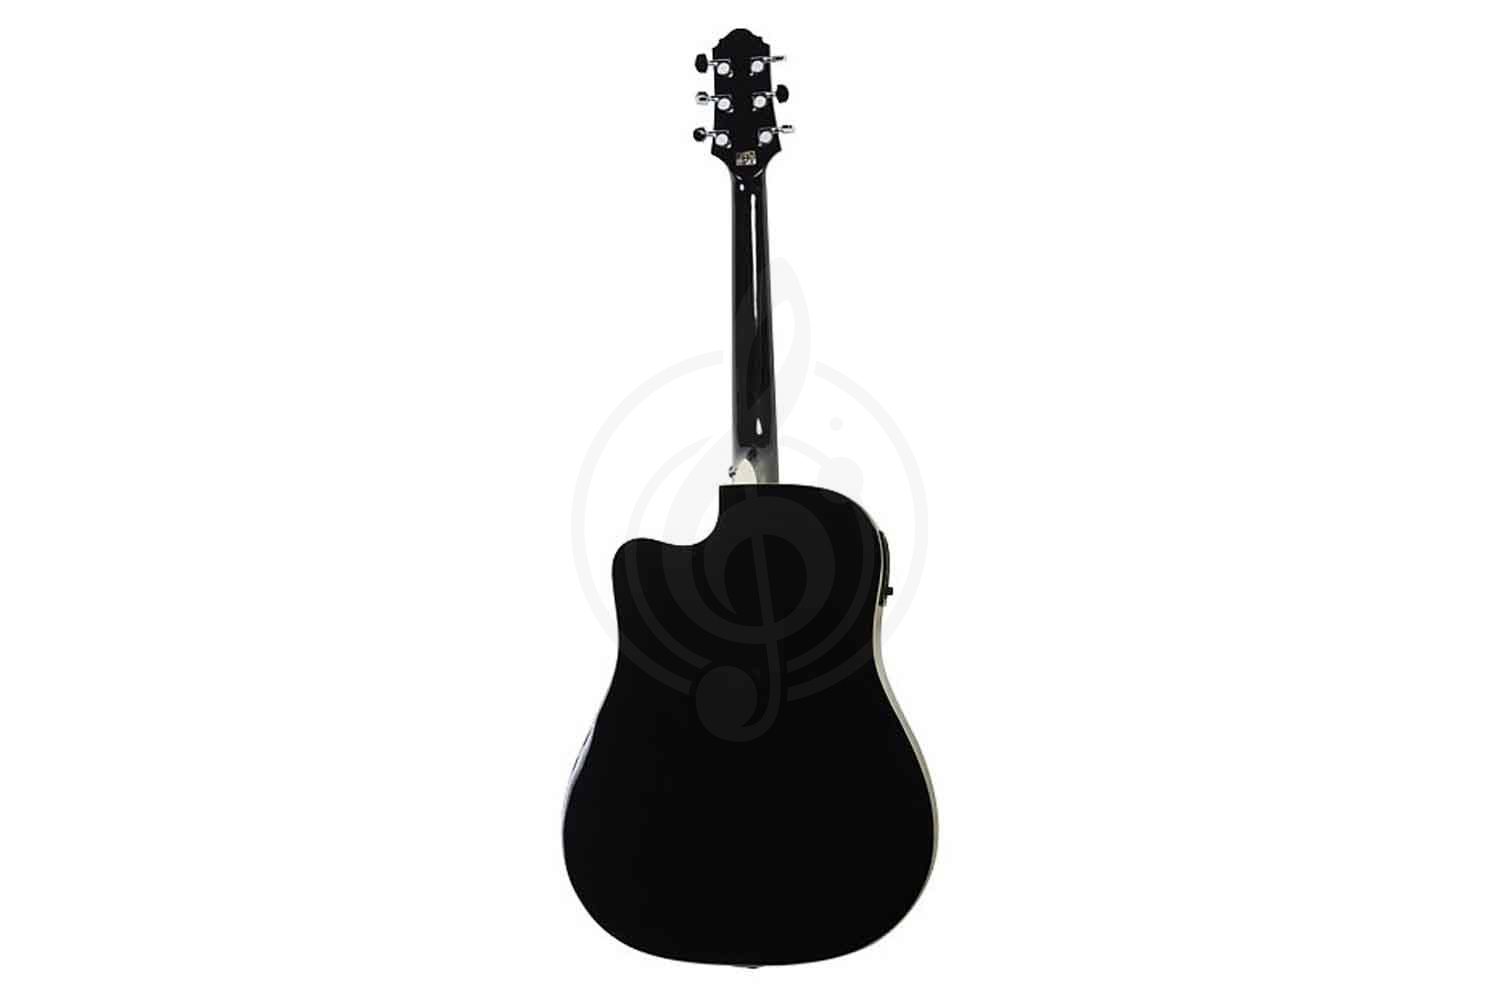 Электроакустическая гитара Электроакустические гитары Cruzer CRUZER SDC-24EQ/BK - электроакустическая гитара Dreadnought, цвет - черный SDC-24EQ/BK - фото 4